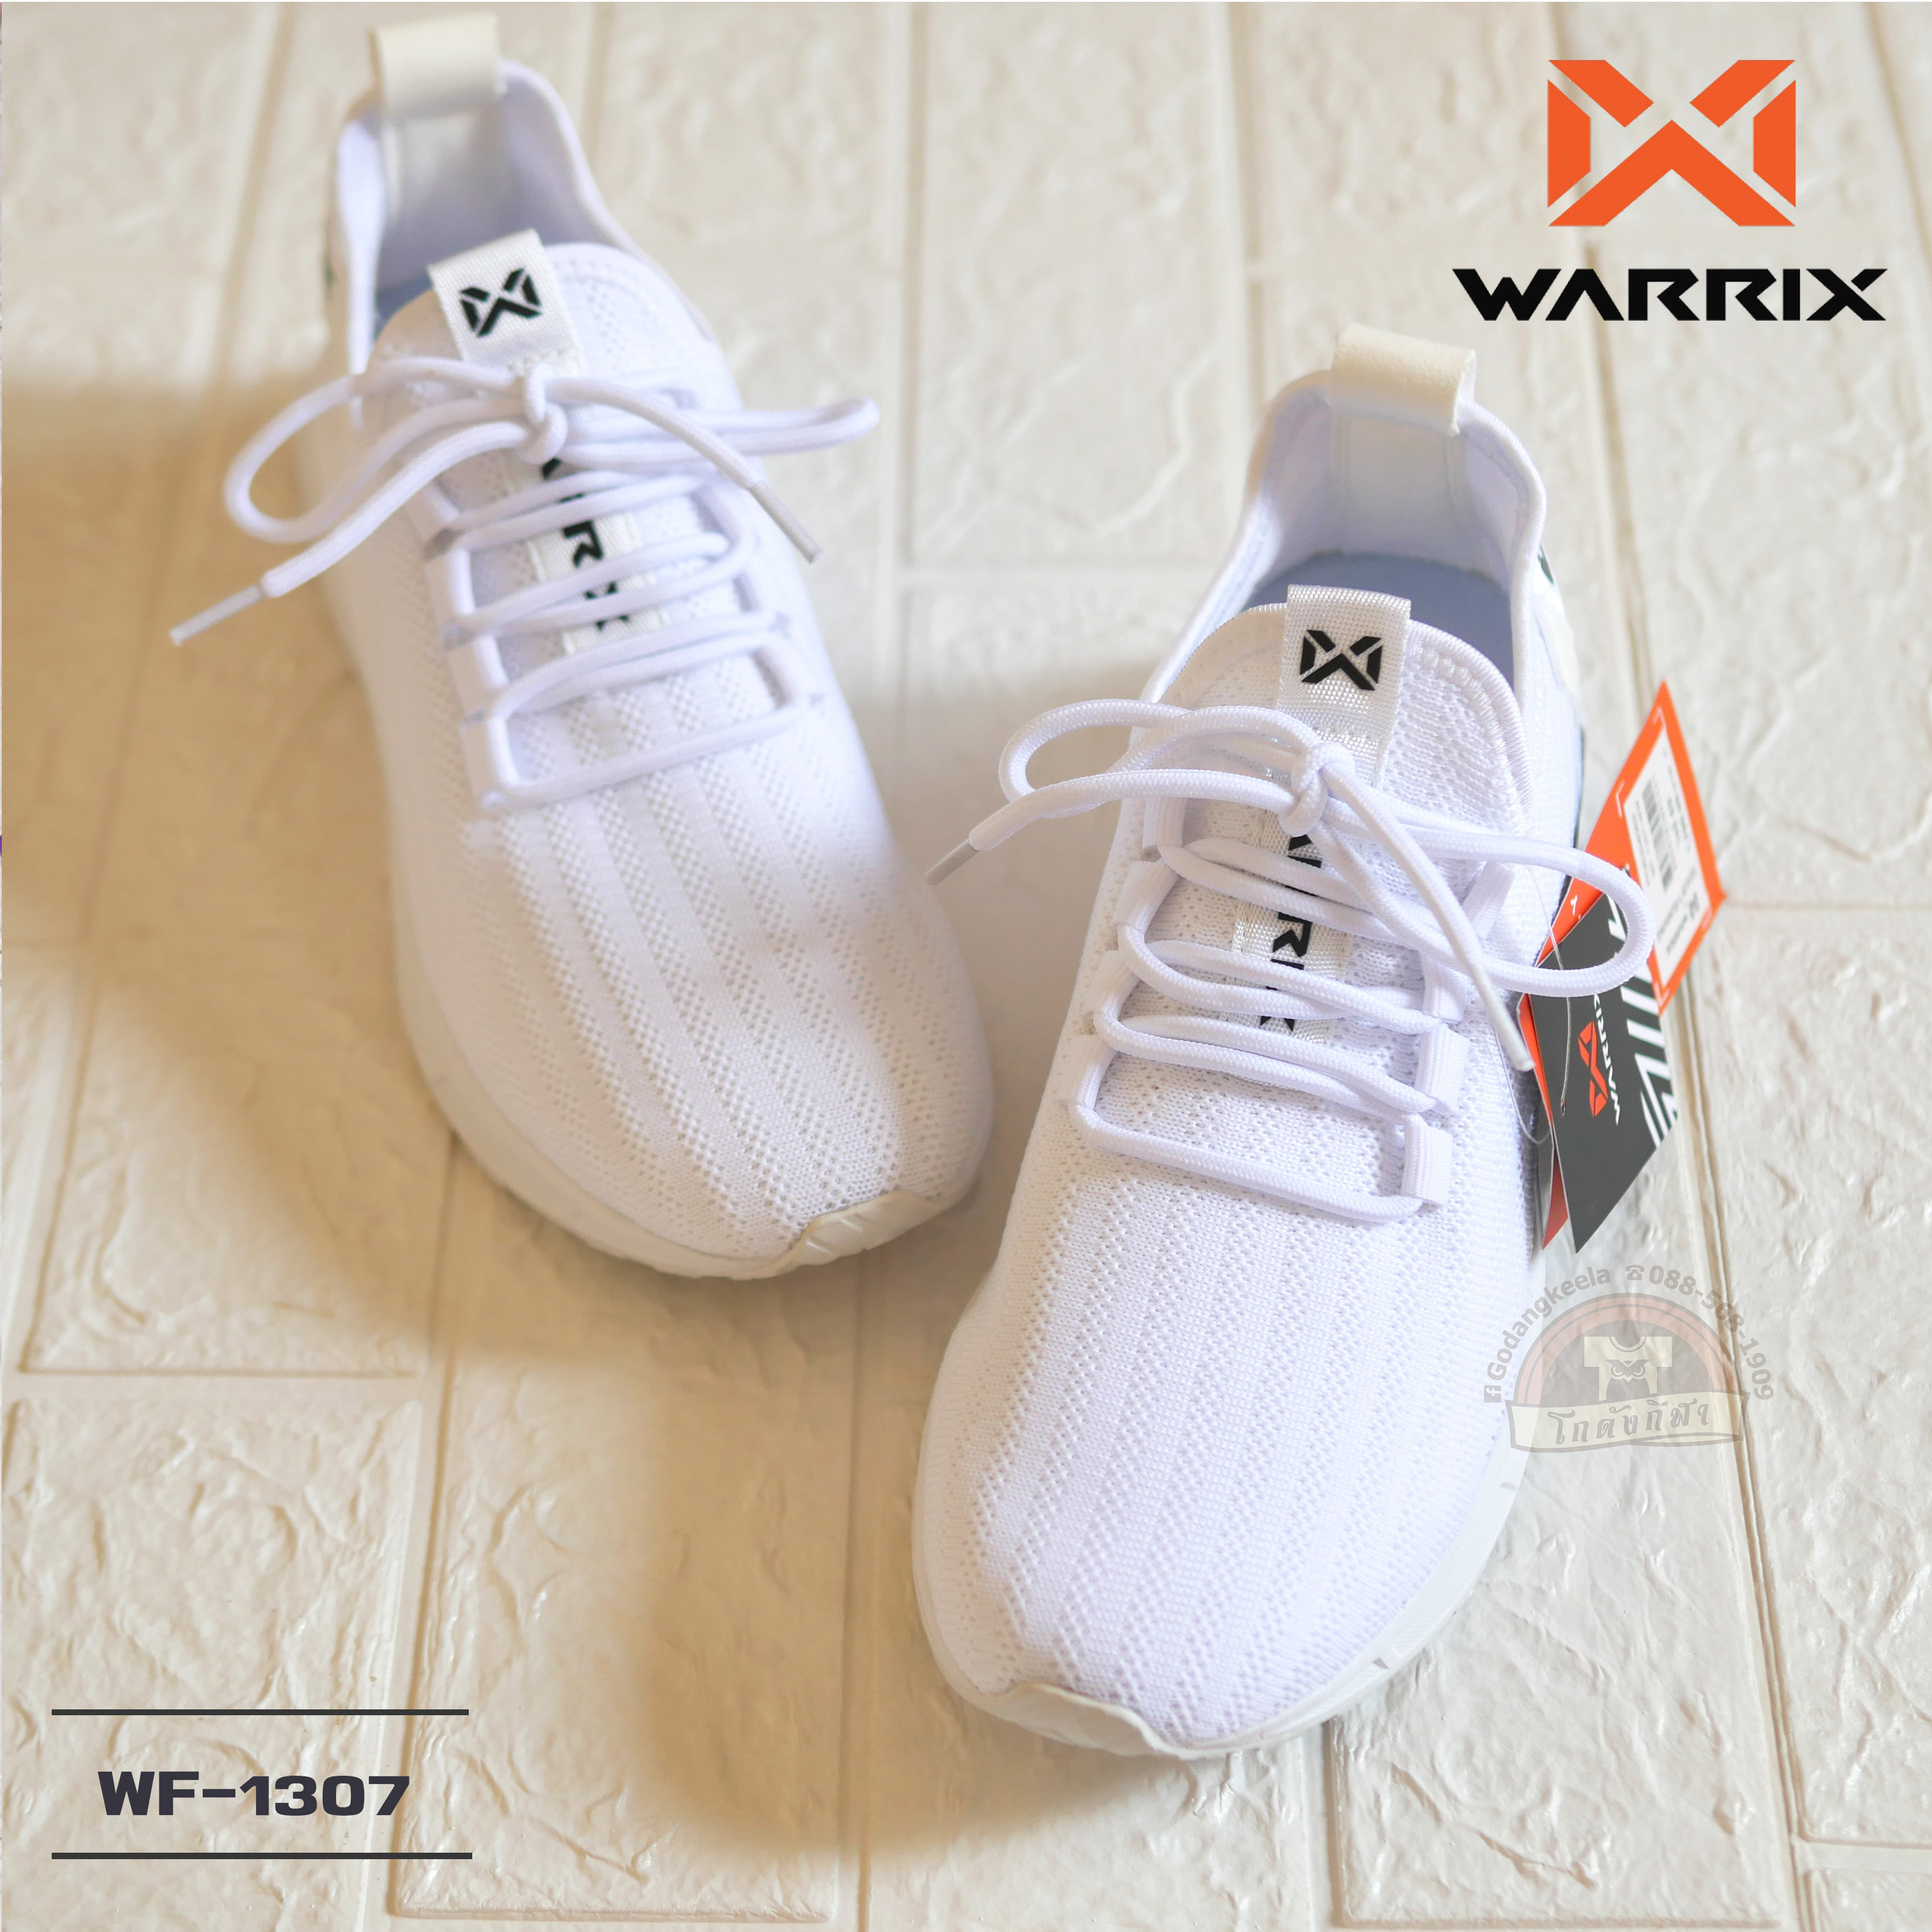 WARRIX รองเท้า รองเท้าวิ่ง Running WF-1307 สีขาว วาริกซ์ วอริกซ์ ของแท้ 100%